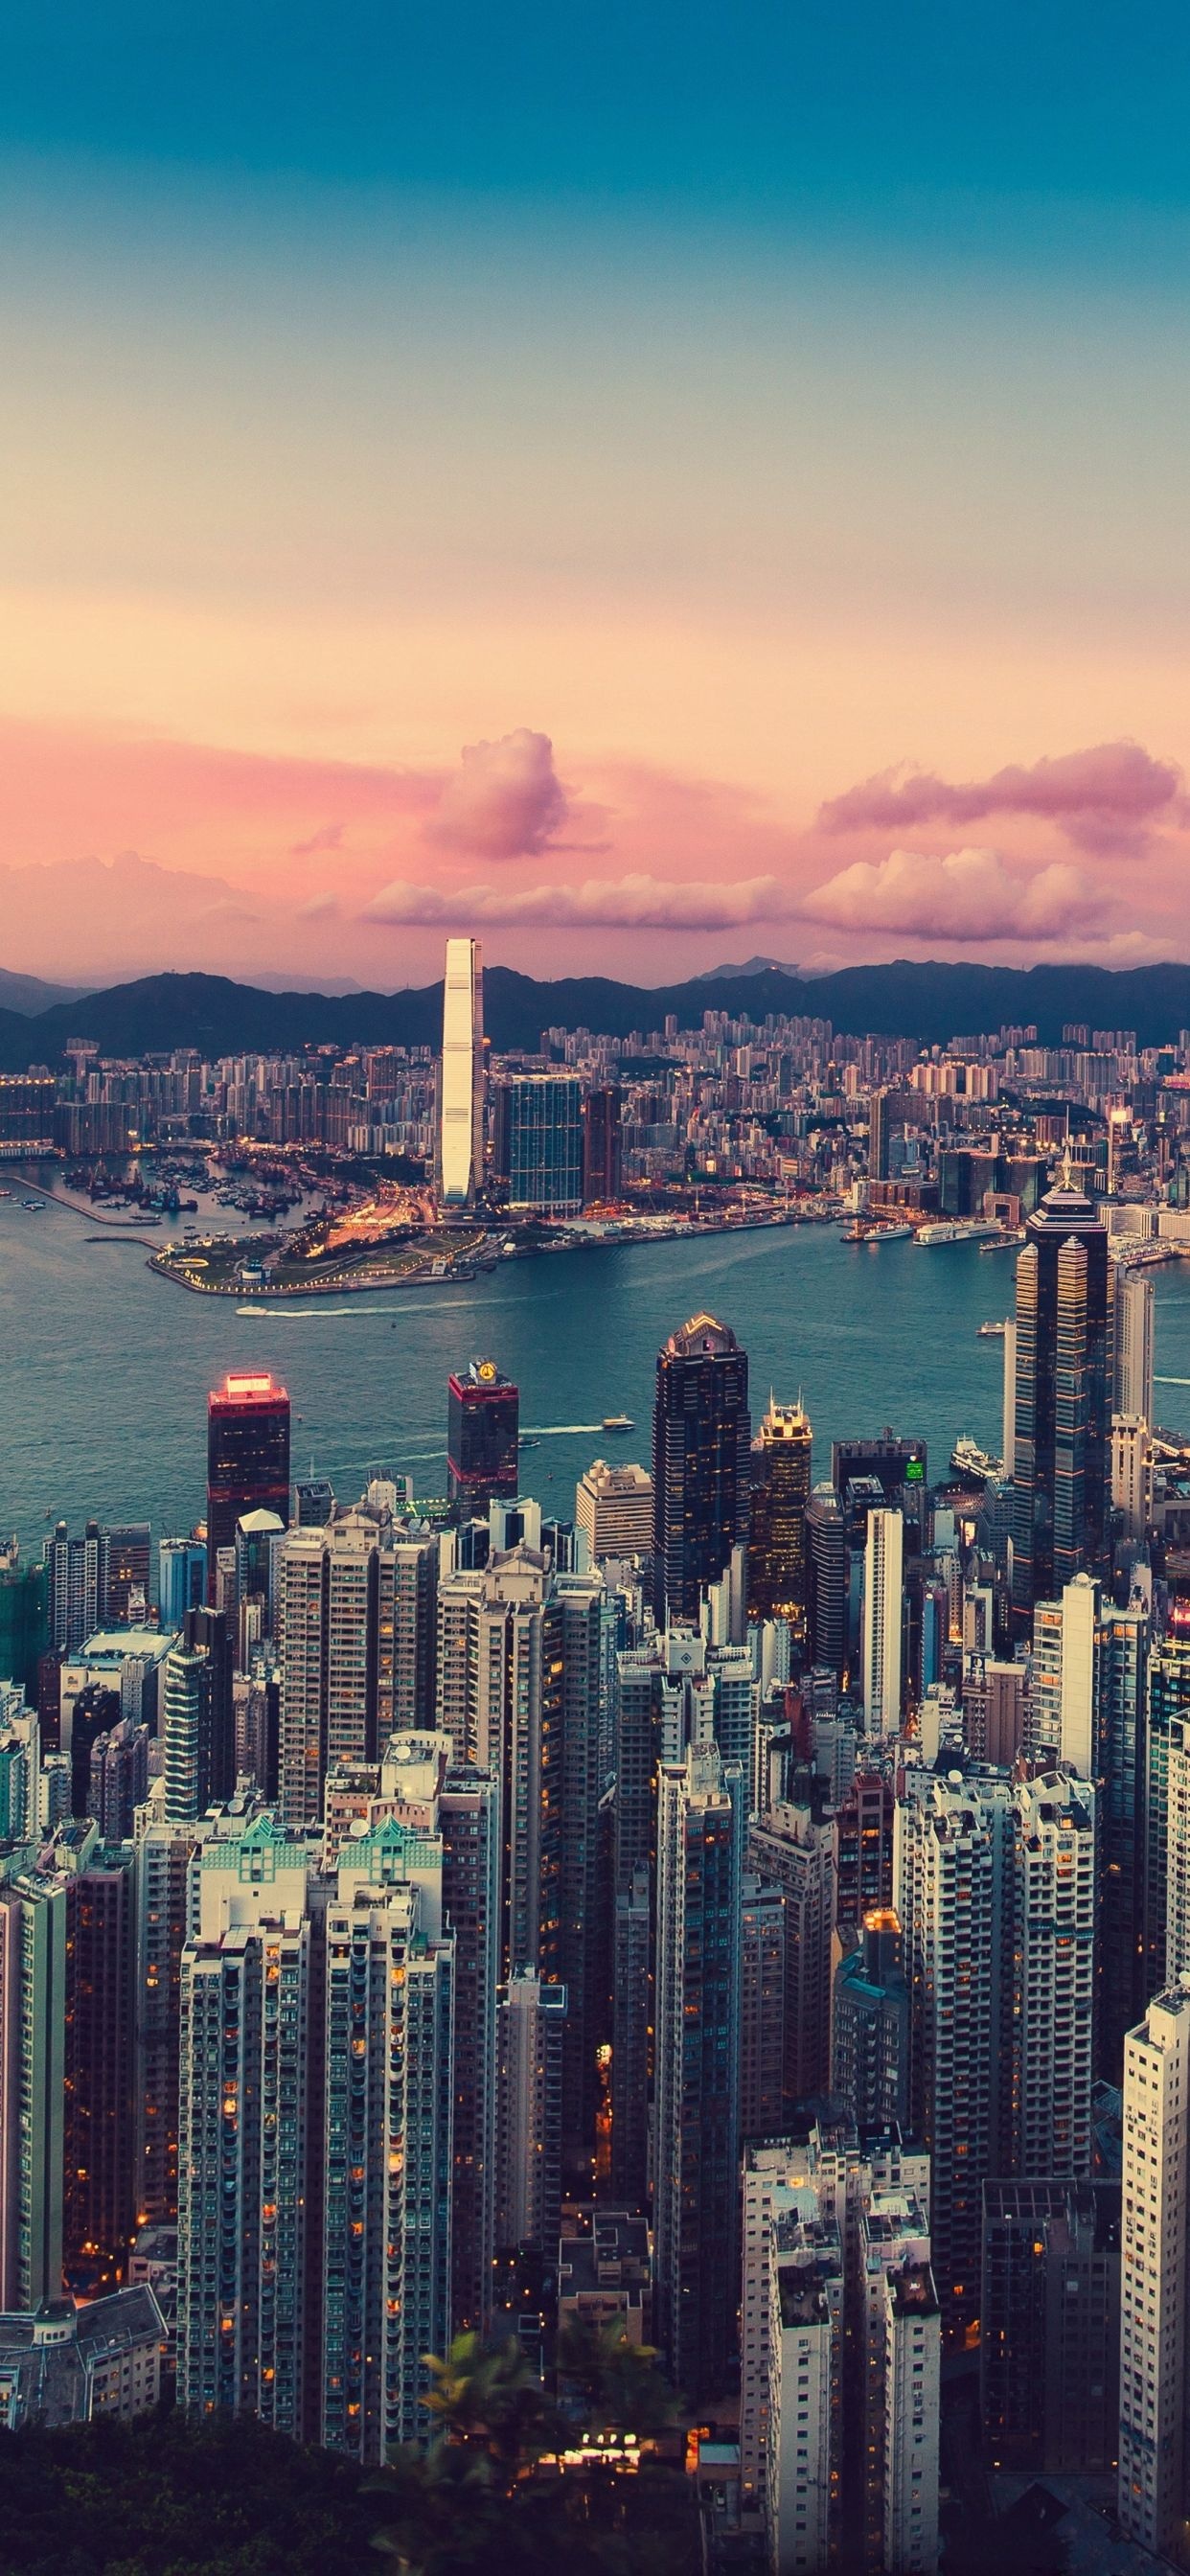 Hong Kong Skyline, Incredible iPhone XS Max wallpaper, Captivating city views, Urban beauty, 1250x2690 HD Phone